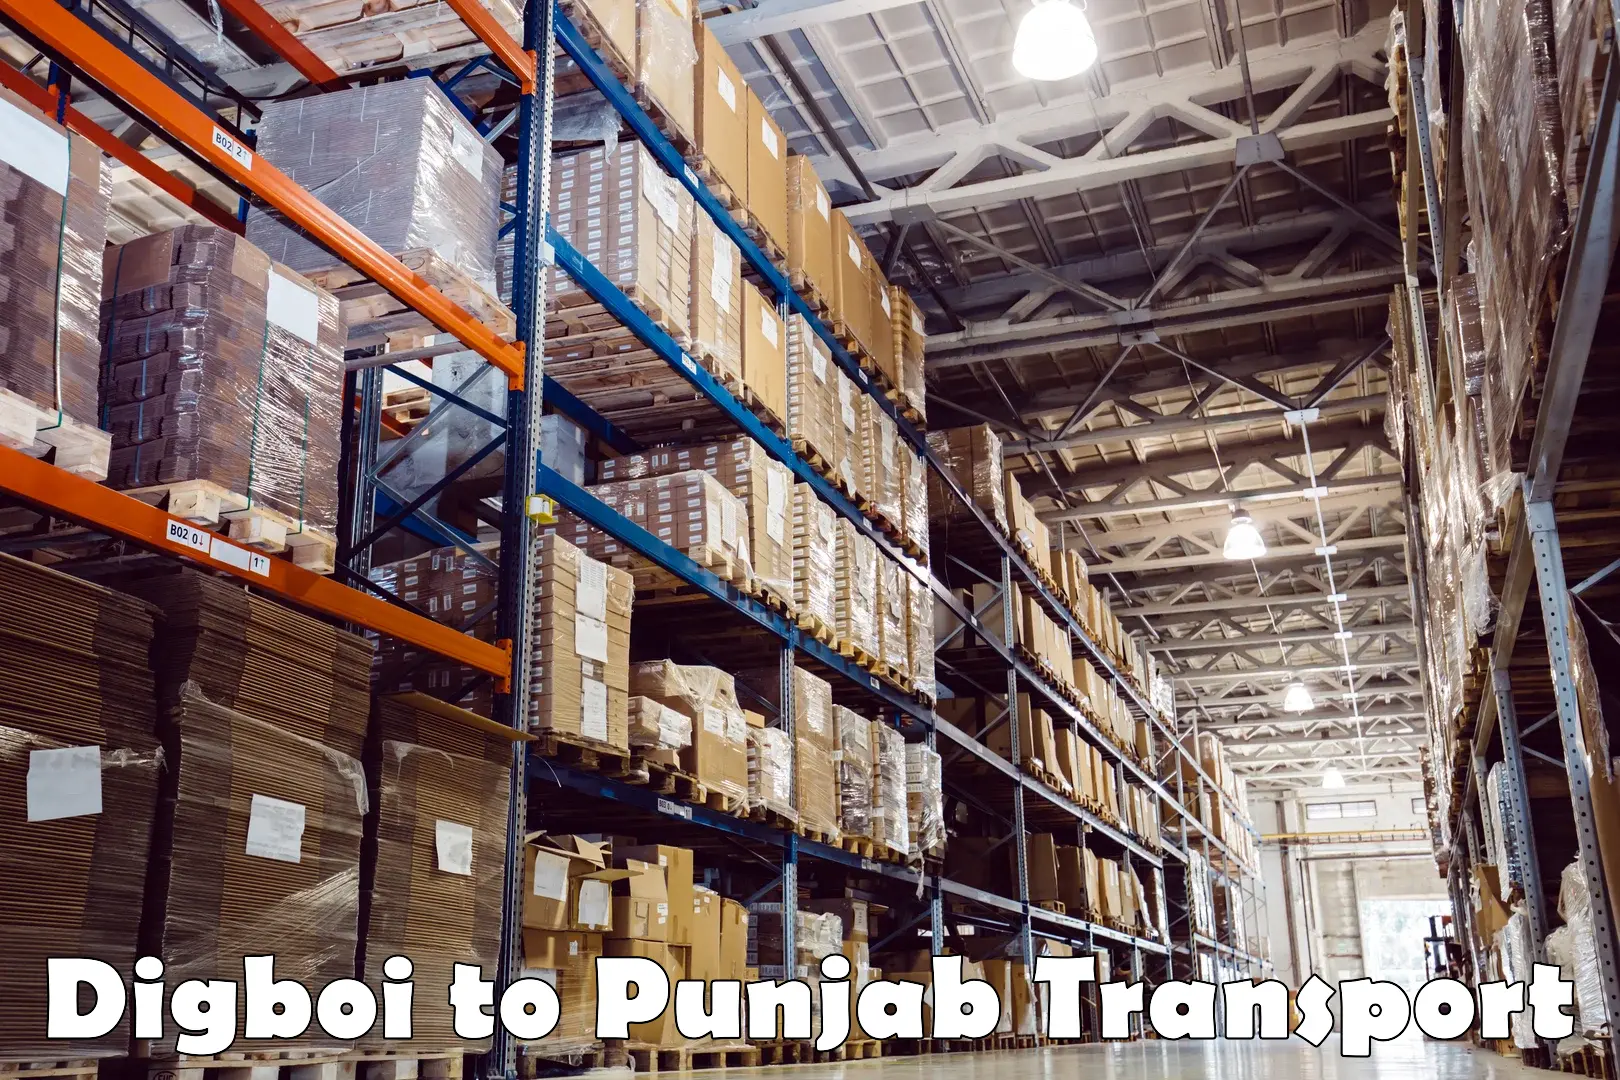 Online transport in Digboi to Punjab